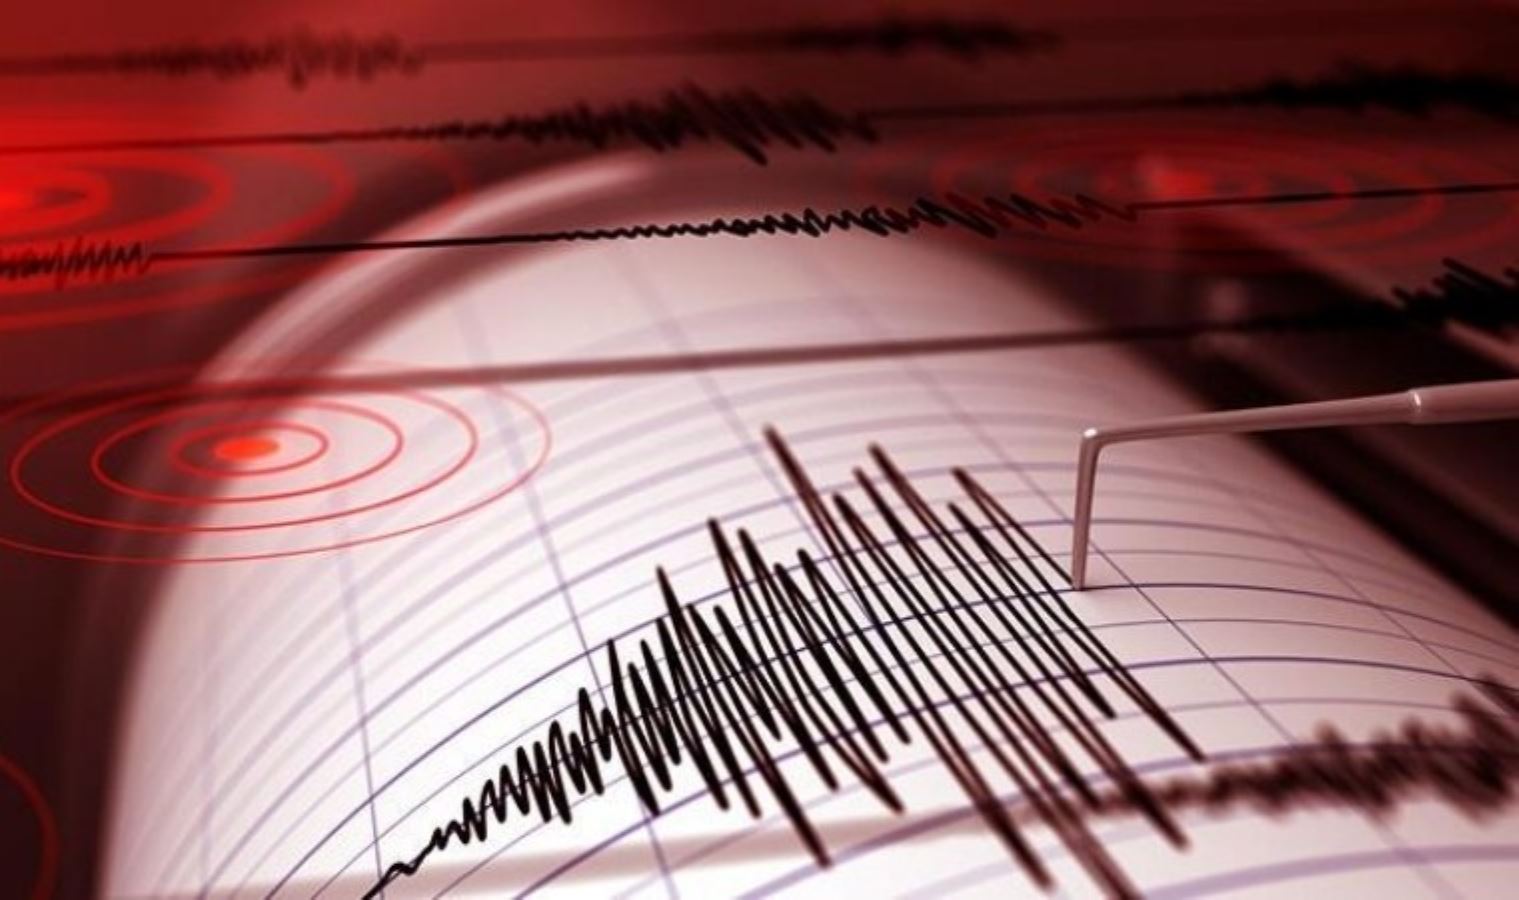 184338069-deprem-sismograf-cizelge-6